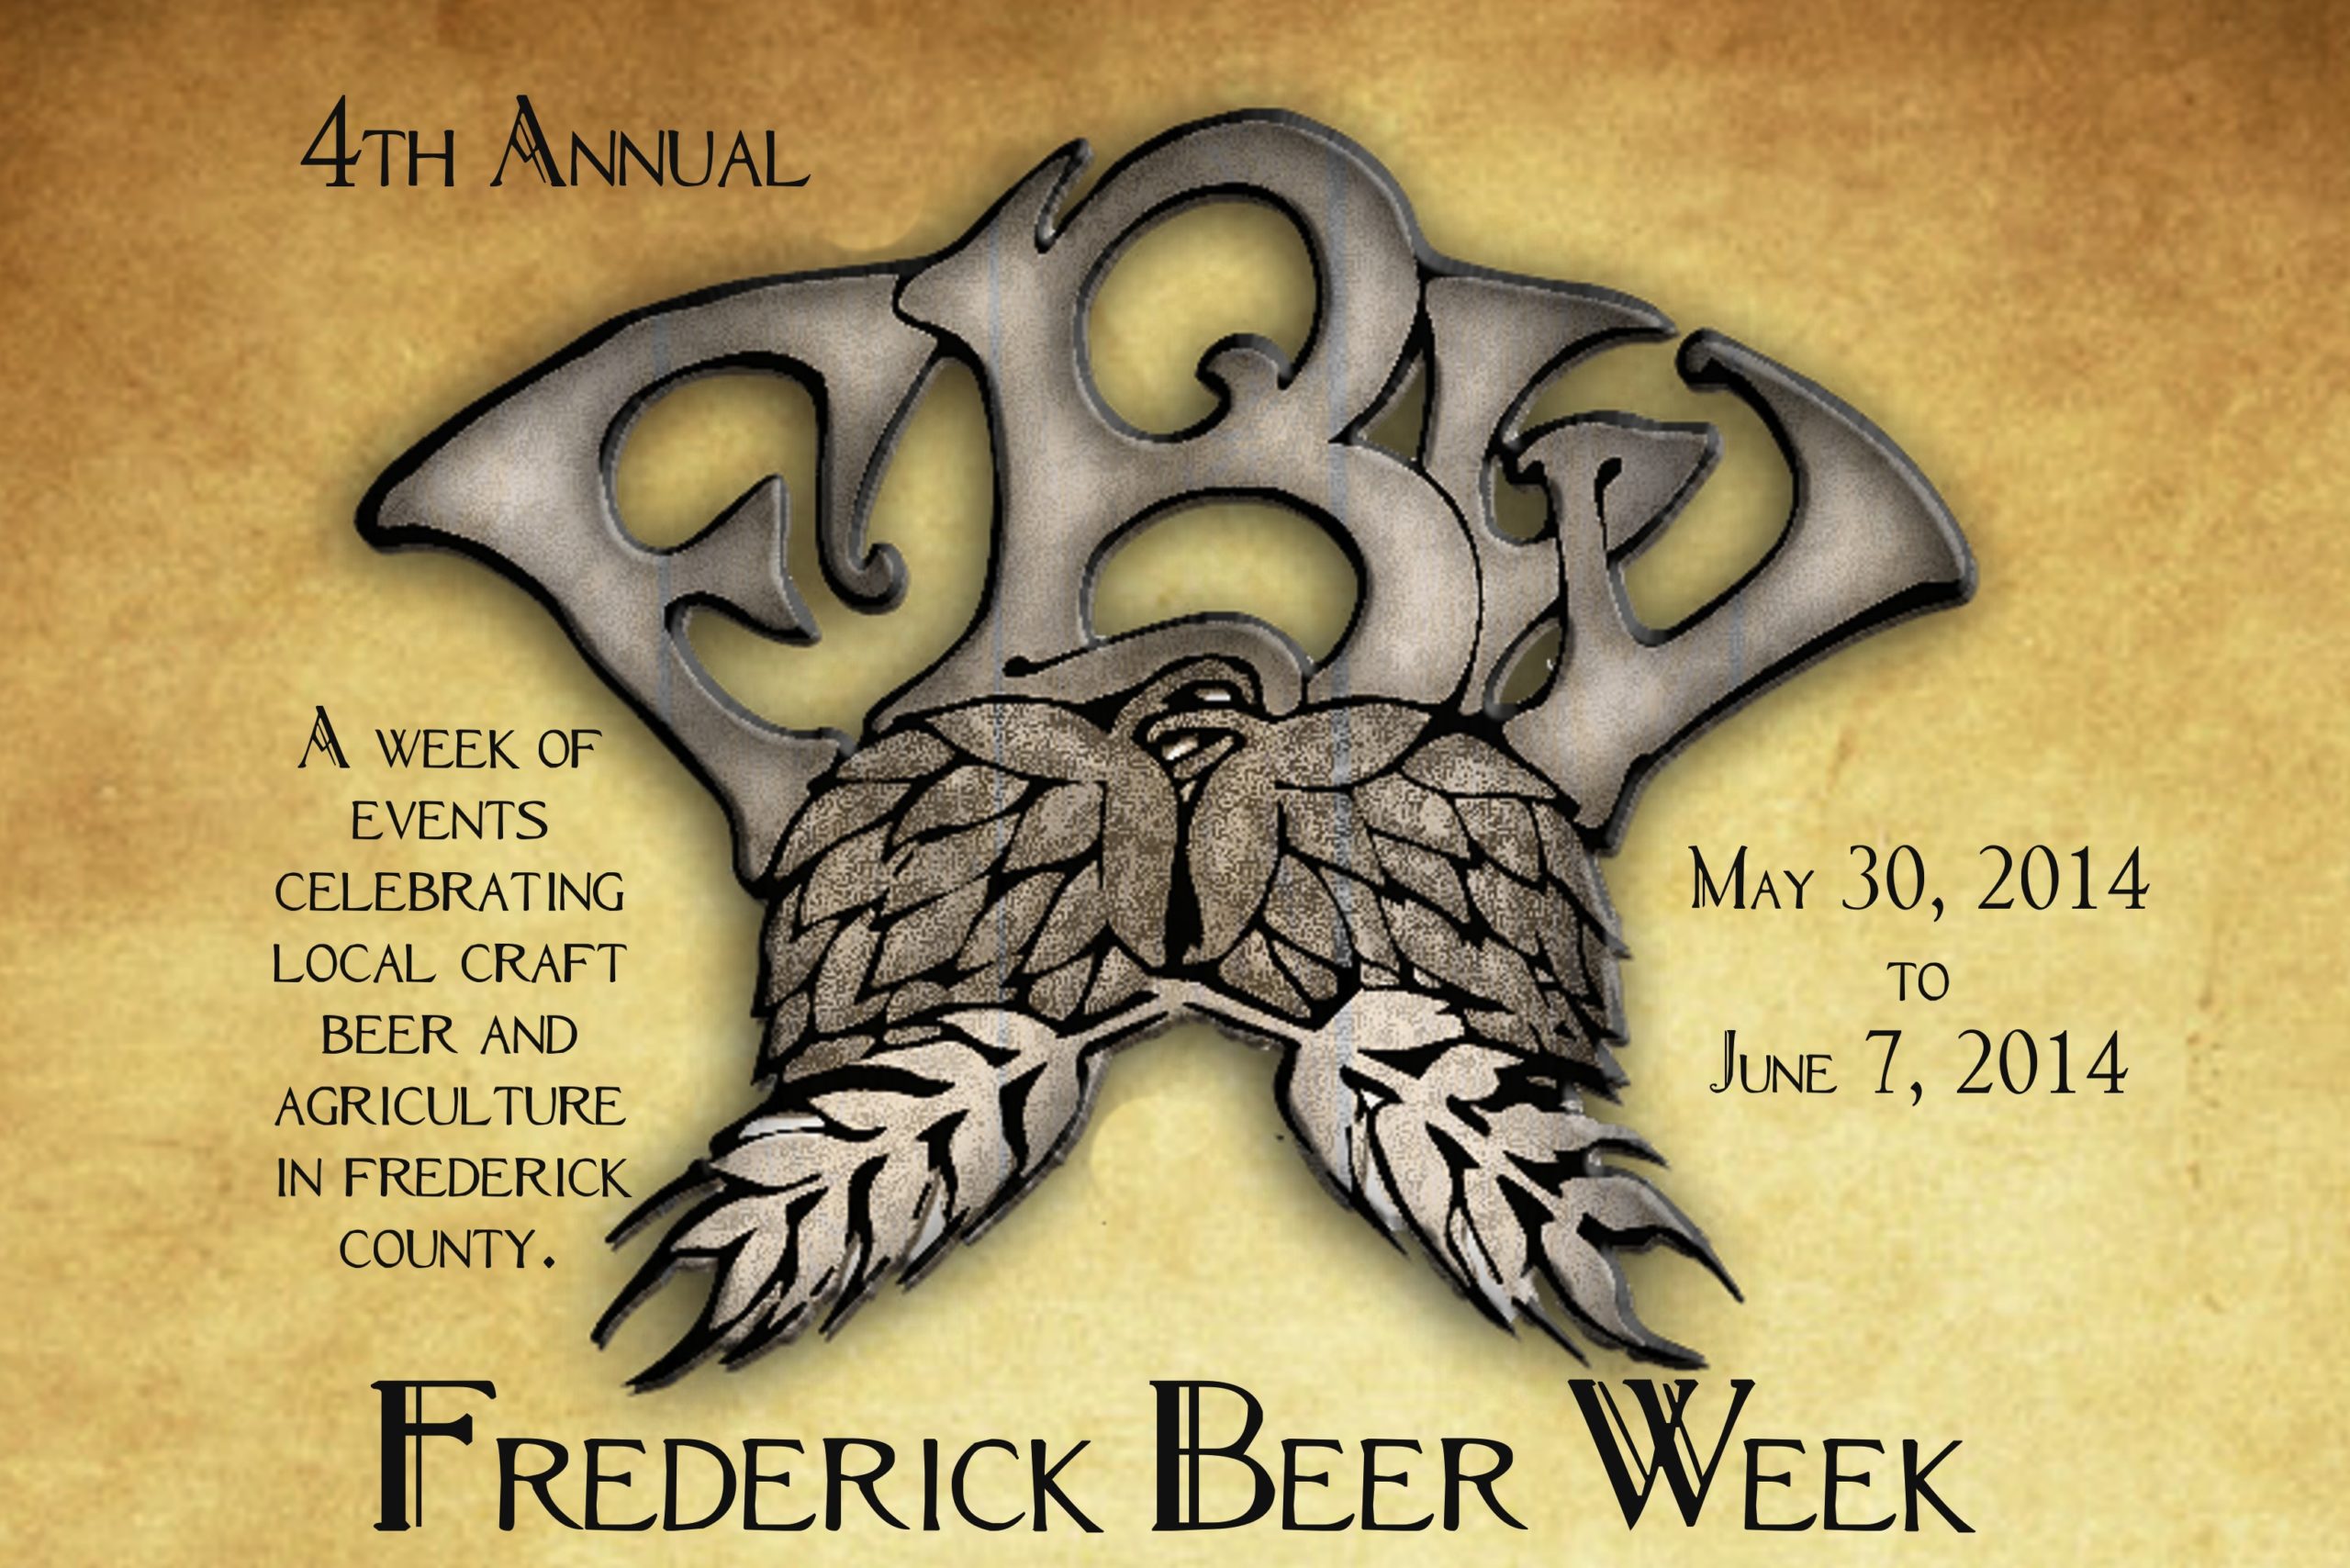 Frederick Beer Week